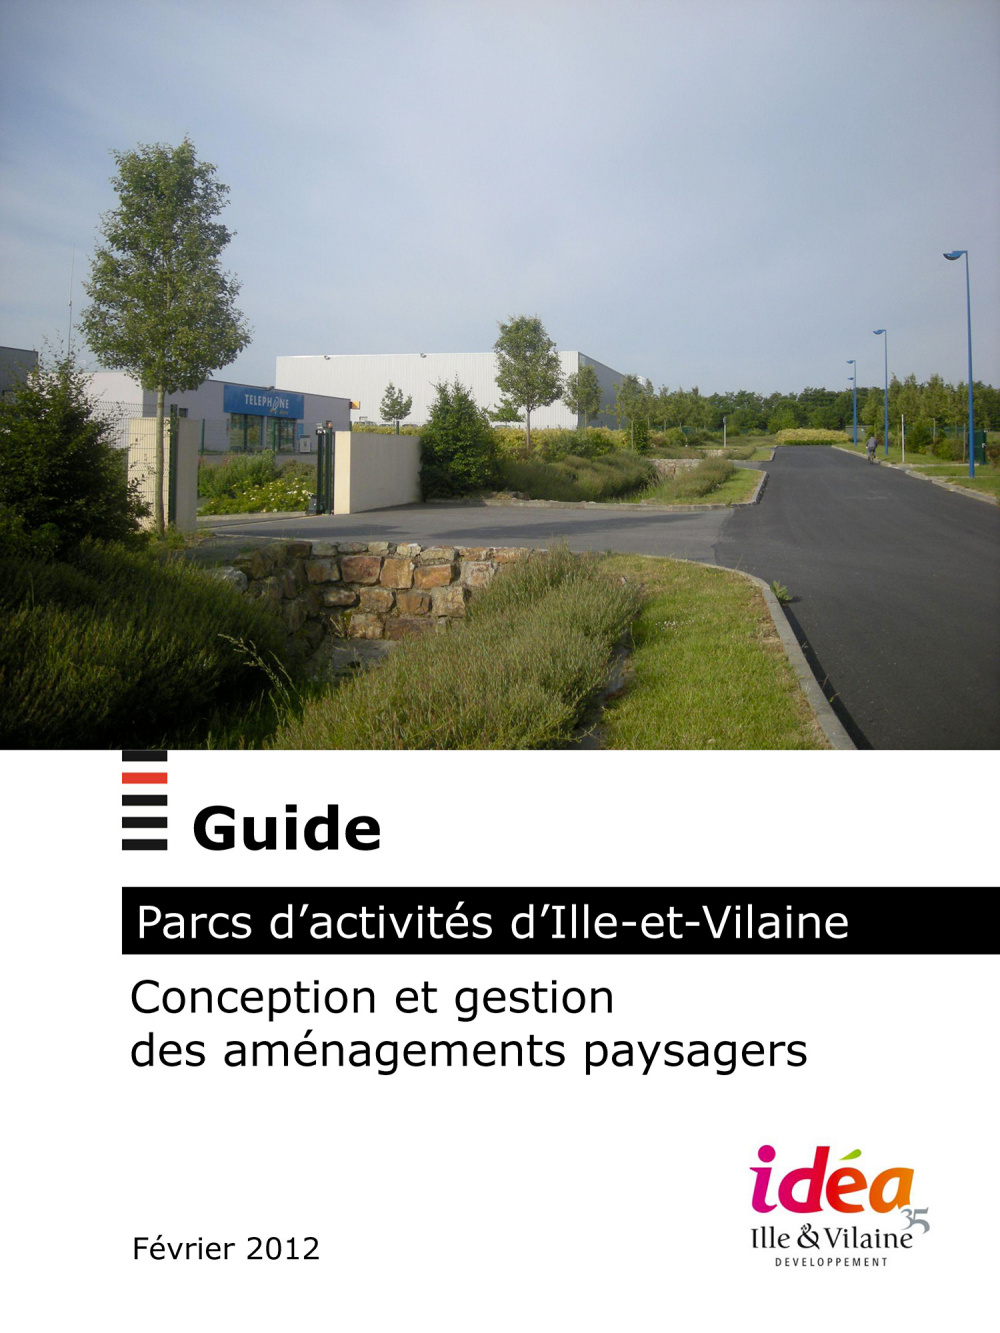 Guide Parc d'activités d'Ile-et-Vilaine